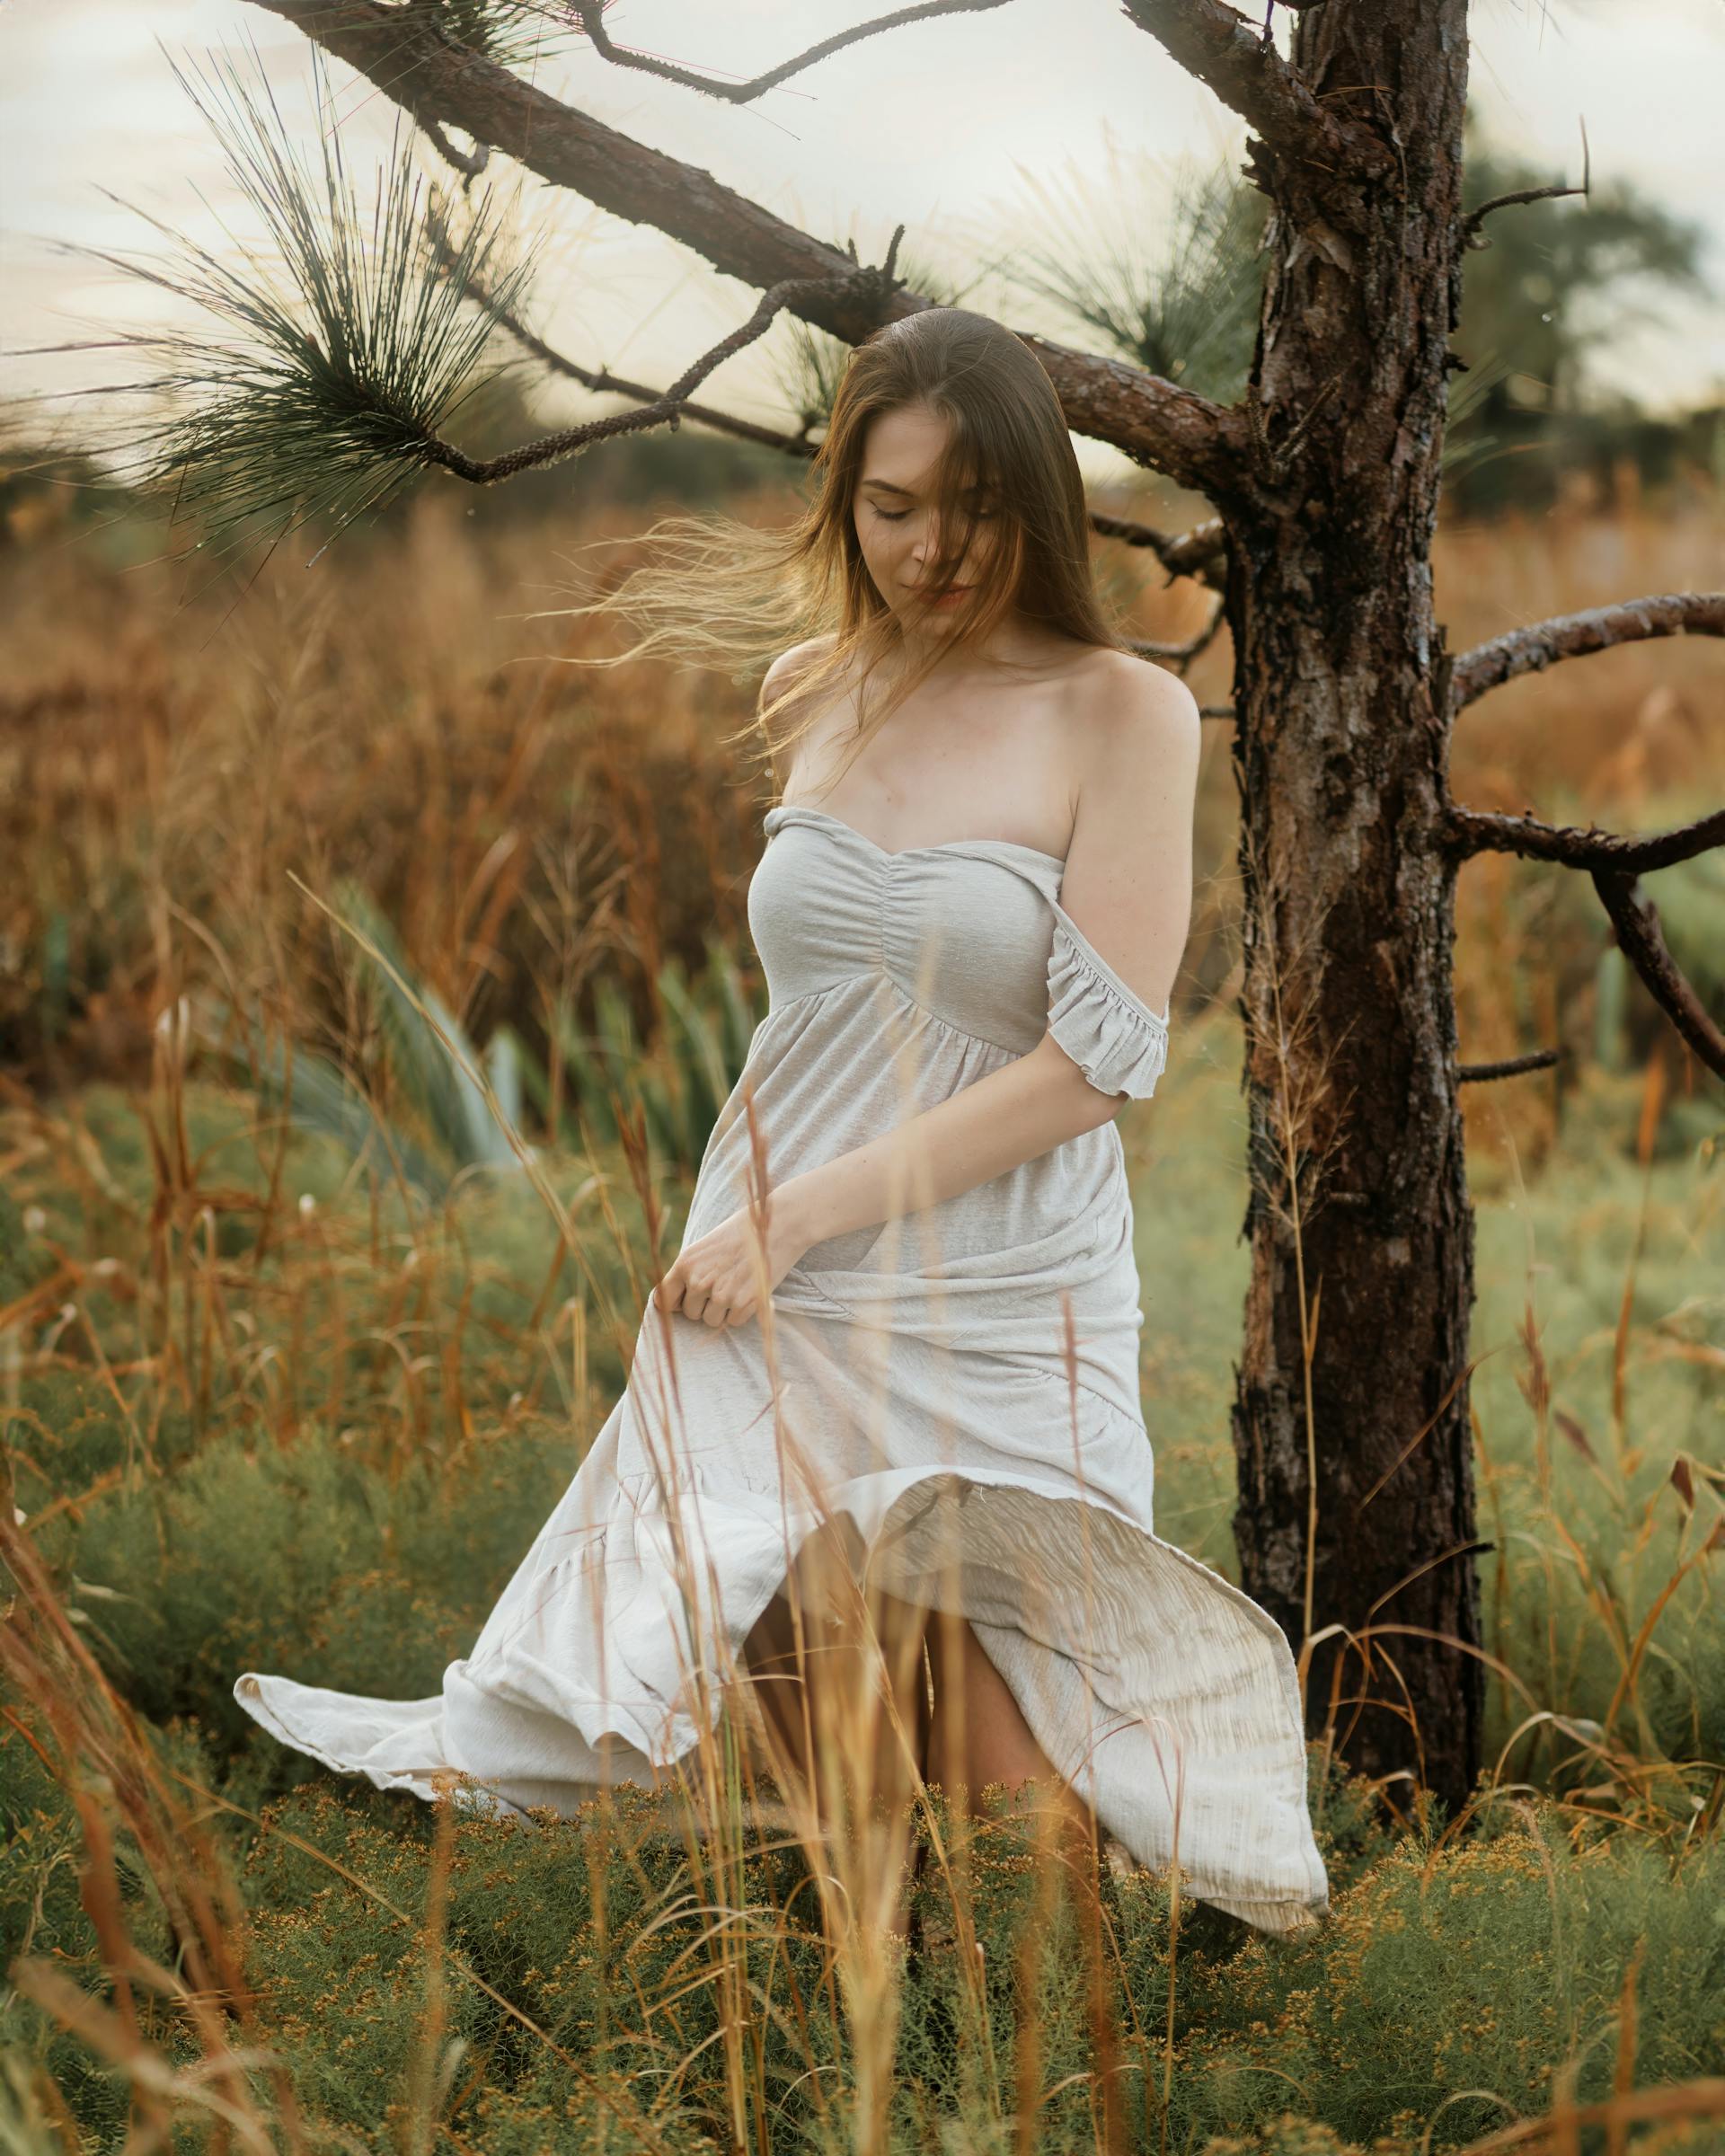 Eine junge Frau in einem weißen Kleid auf einem Feld | Quelle: Pexels